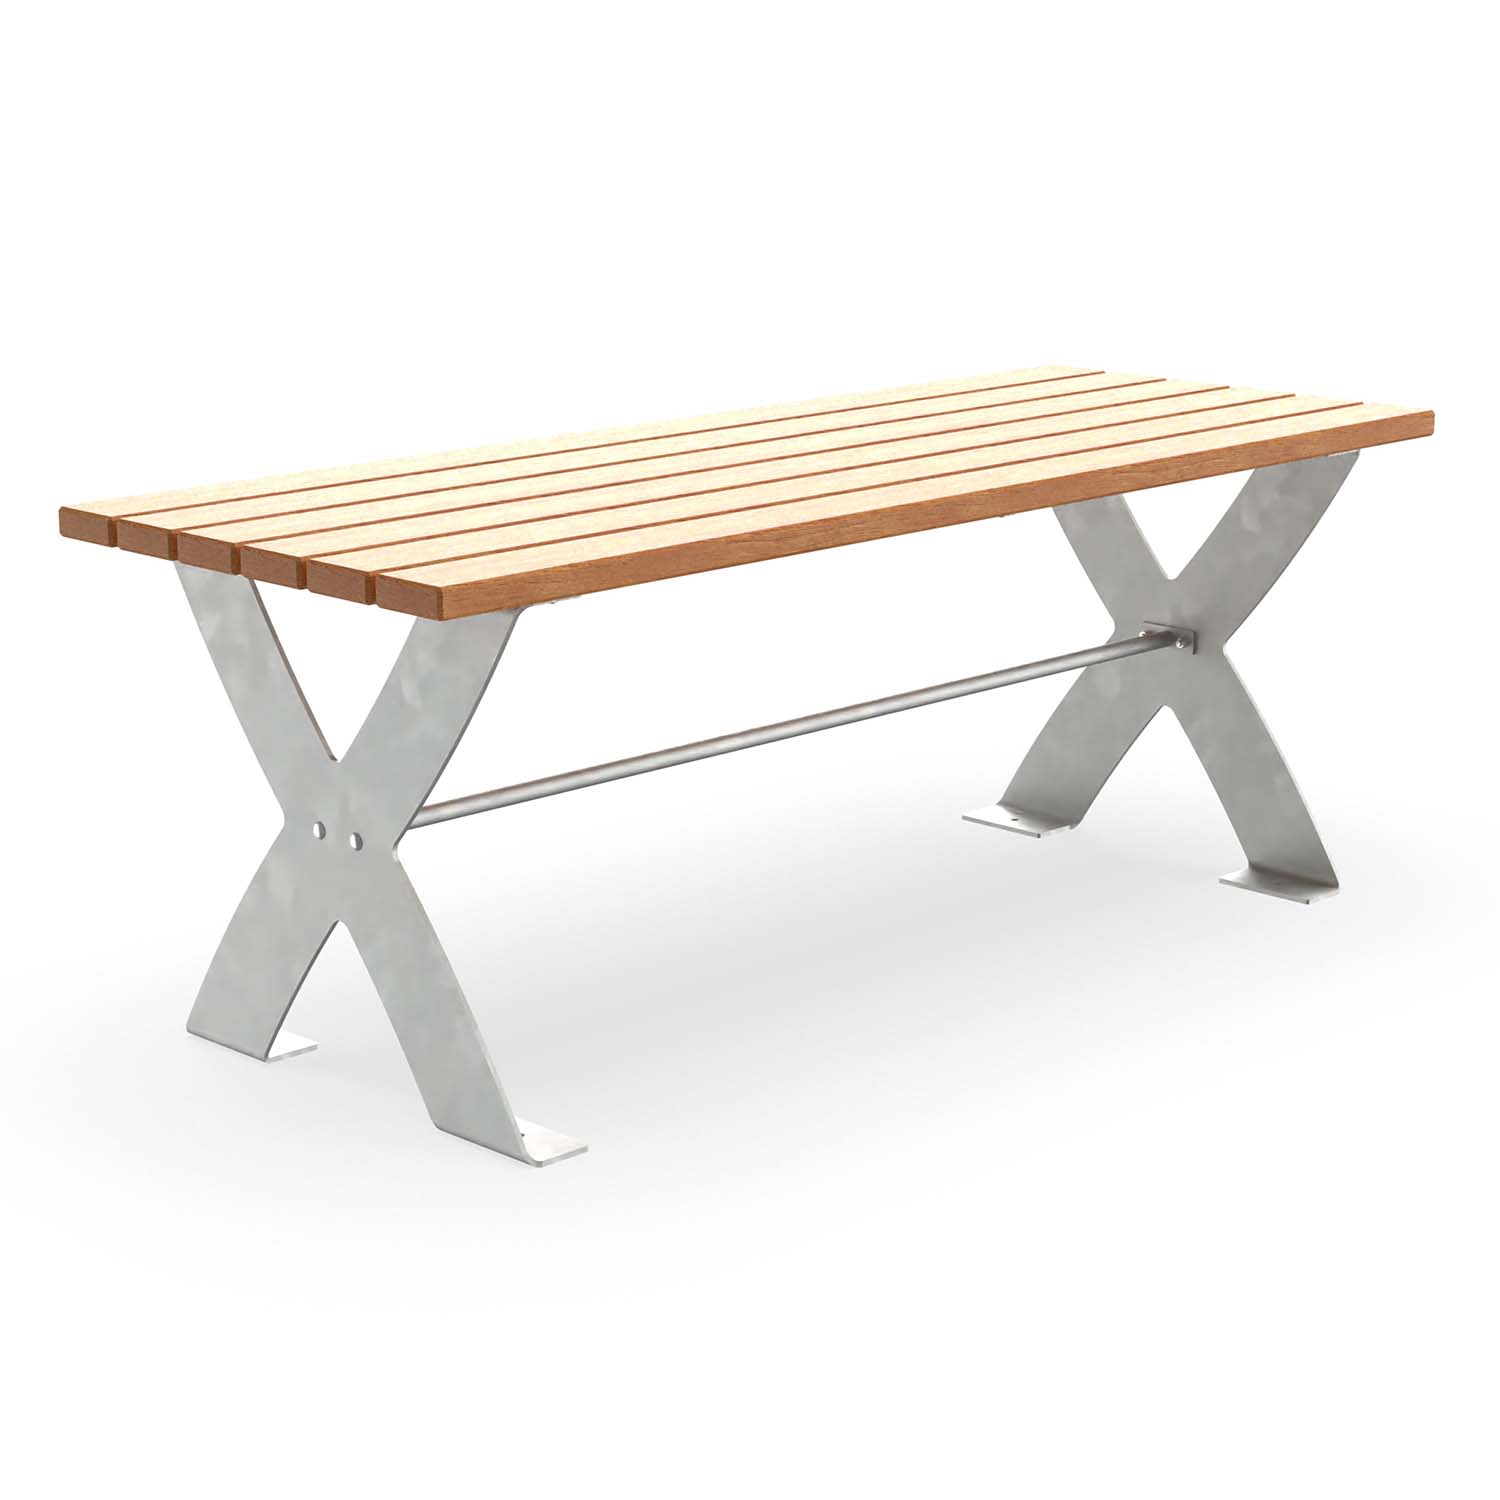 Outdoor-Tisch für Gartenbank CERANA, Flachstahl, Tischfläche aus Holz, verzinkt